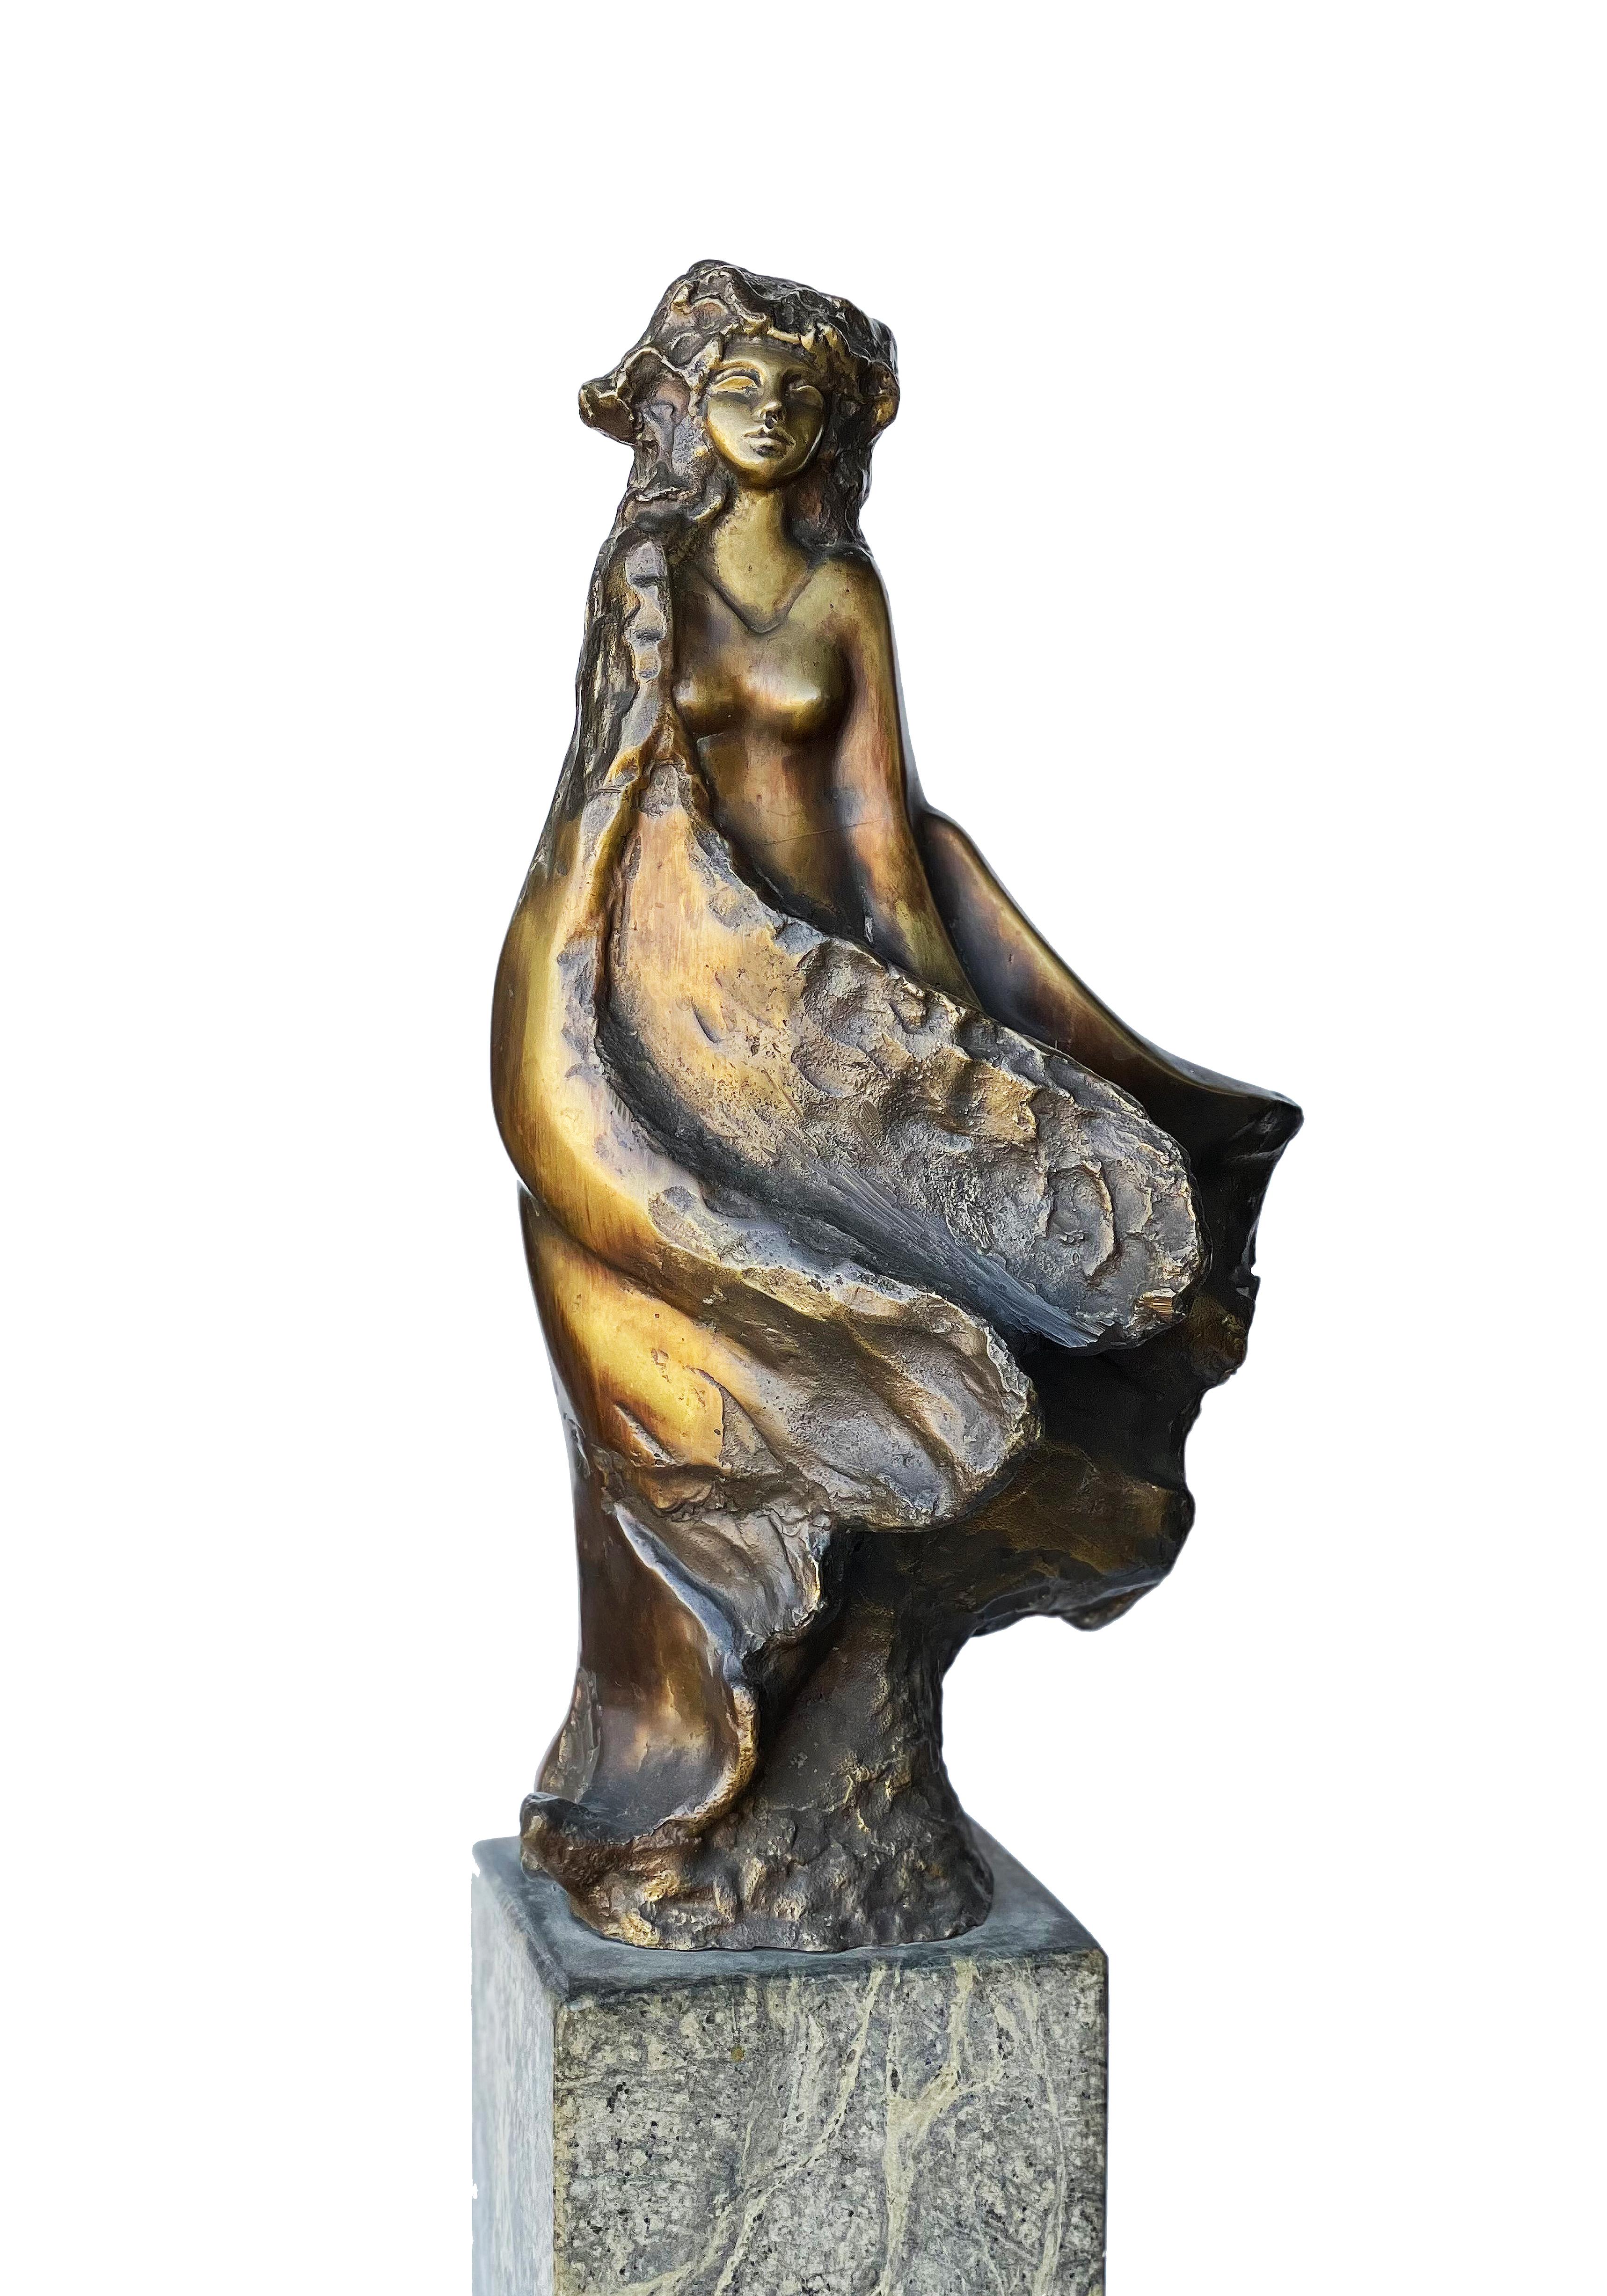 "Gloria" Skulptur aus Bronze und Marmor 27" x 11" von Ibrahim Abd Elmalak

Gloria, 2007
Bronze und Marmor 
68 x 27 cm, Signiert und datiert


Skulpturen, die zumeist seine charakteristischen Figuren weiblicher Formen und Gefühle darstellen - ein